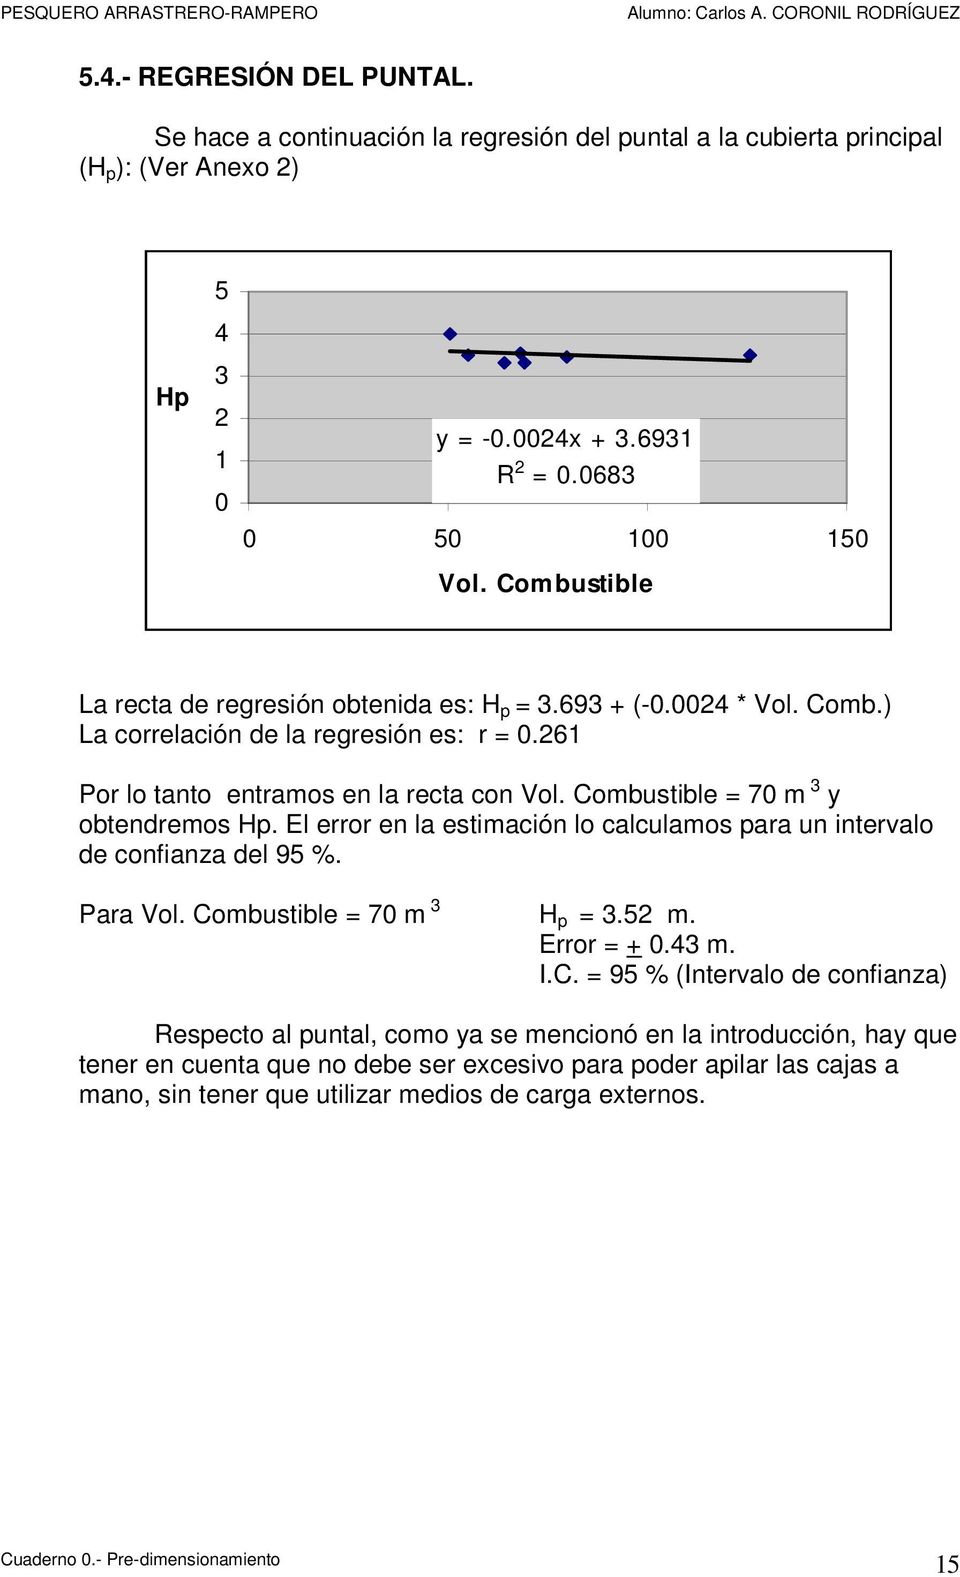 Combustible = 70 m 3 y obtendremos Hp. El error en la estimación lo calculamos para un intervalo de confianza del 95 %. Para Vol. Combustible = 70 m 3 H p = 3.52 m. Error = + 0.43 m. I.C. = 95 %